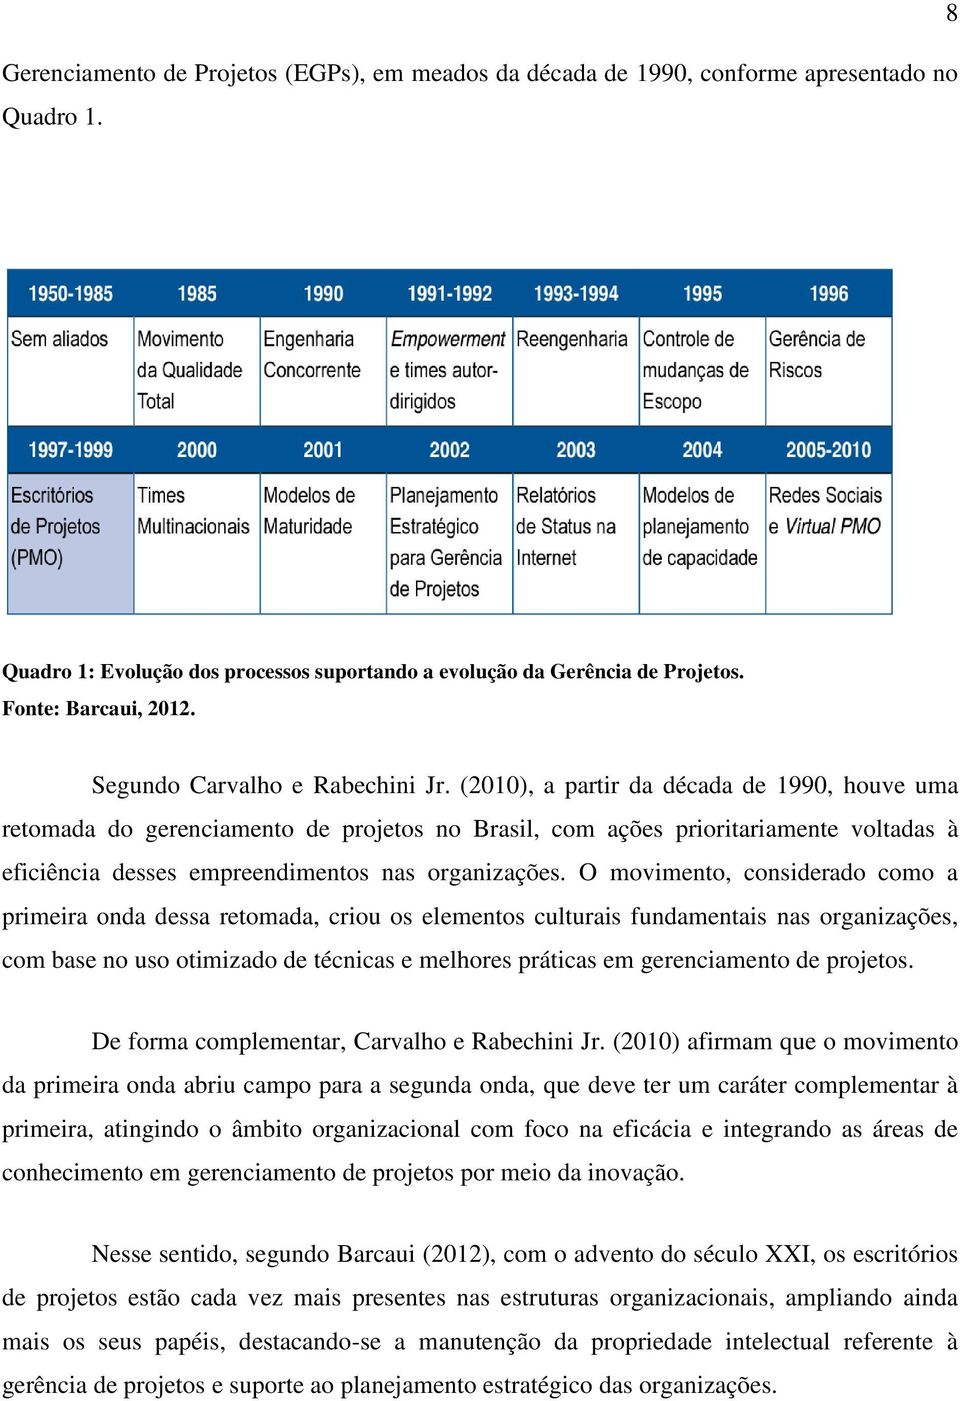 (2010), a partir da década de 1990, houve uma retomada do gerenciamento de projetos no Brasil, com ações prioritariamente voltadas à eficiência desses empreendimentos nas organizações.